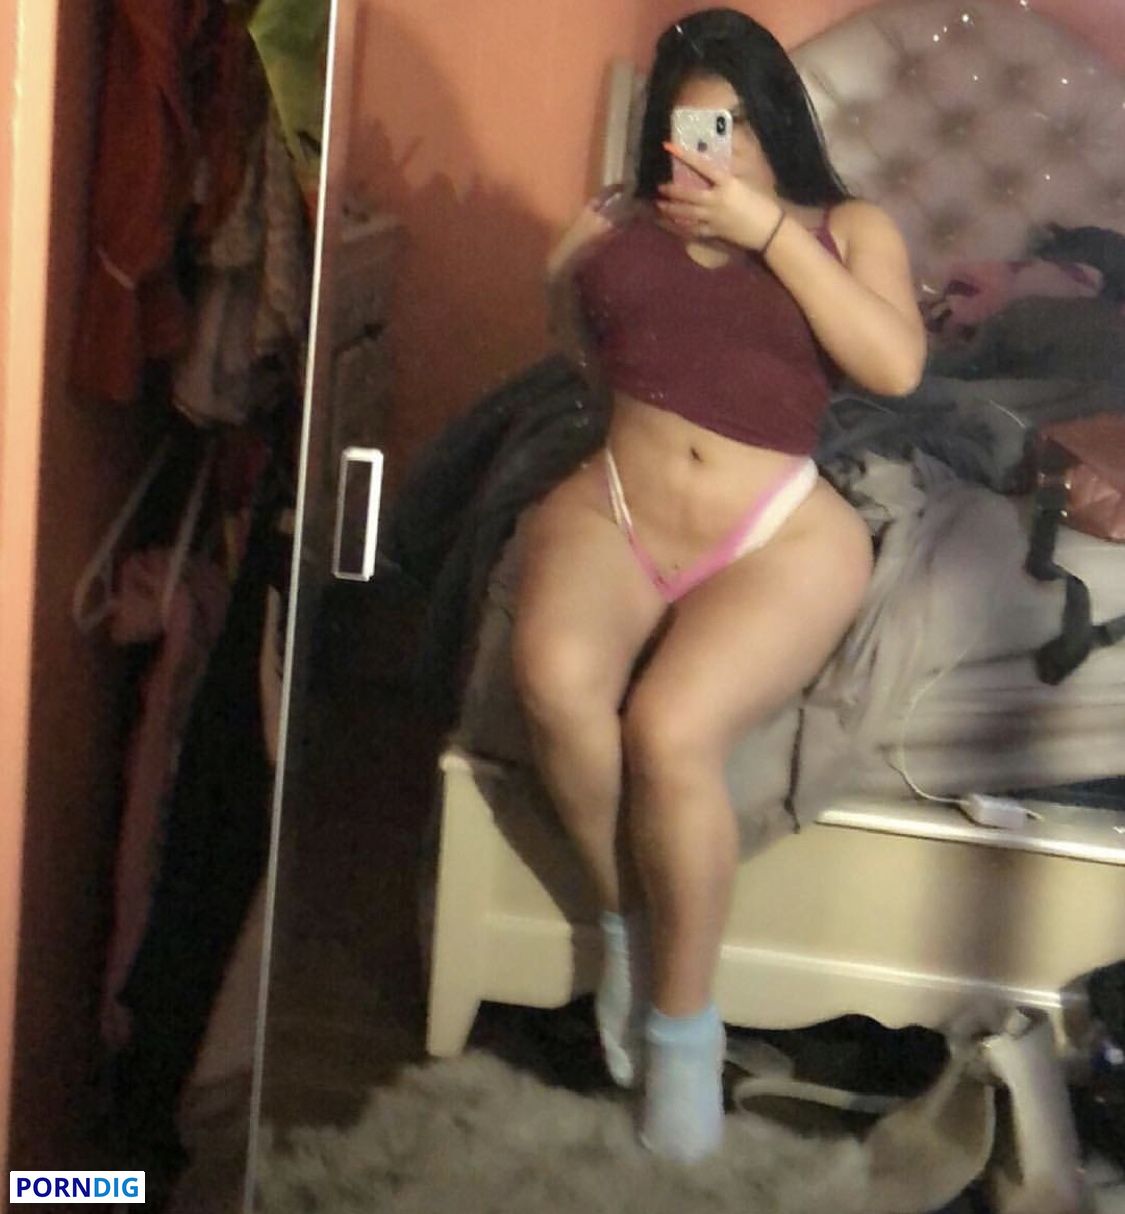 Peruvianbad Nude OnlyFans Leaks 9 Photos